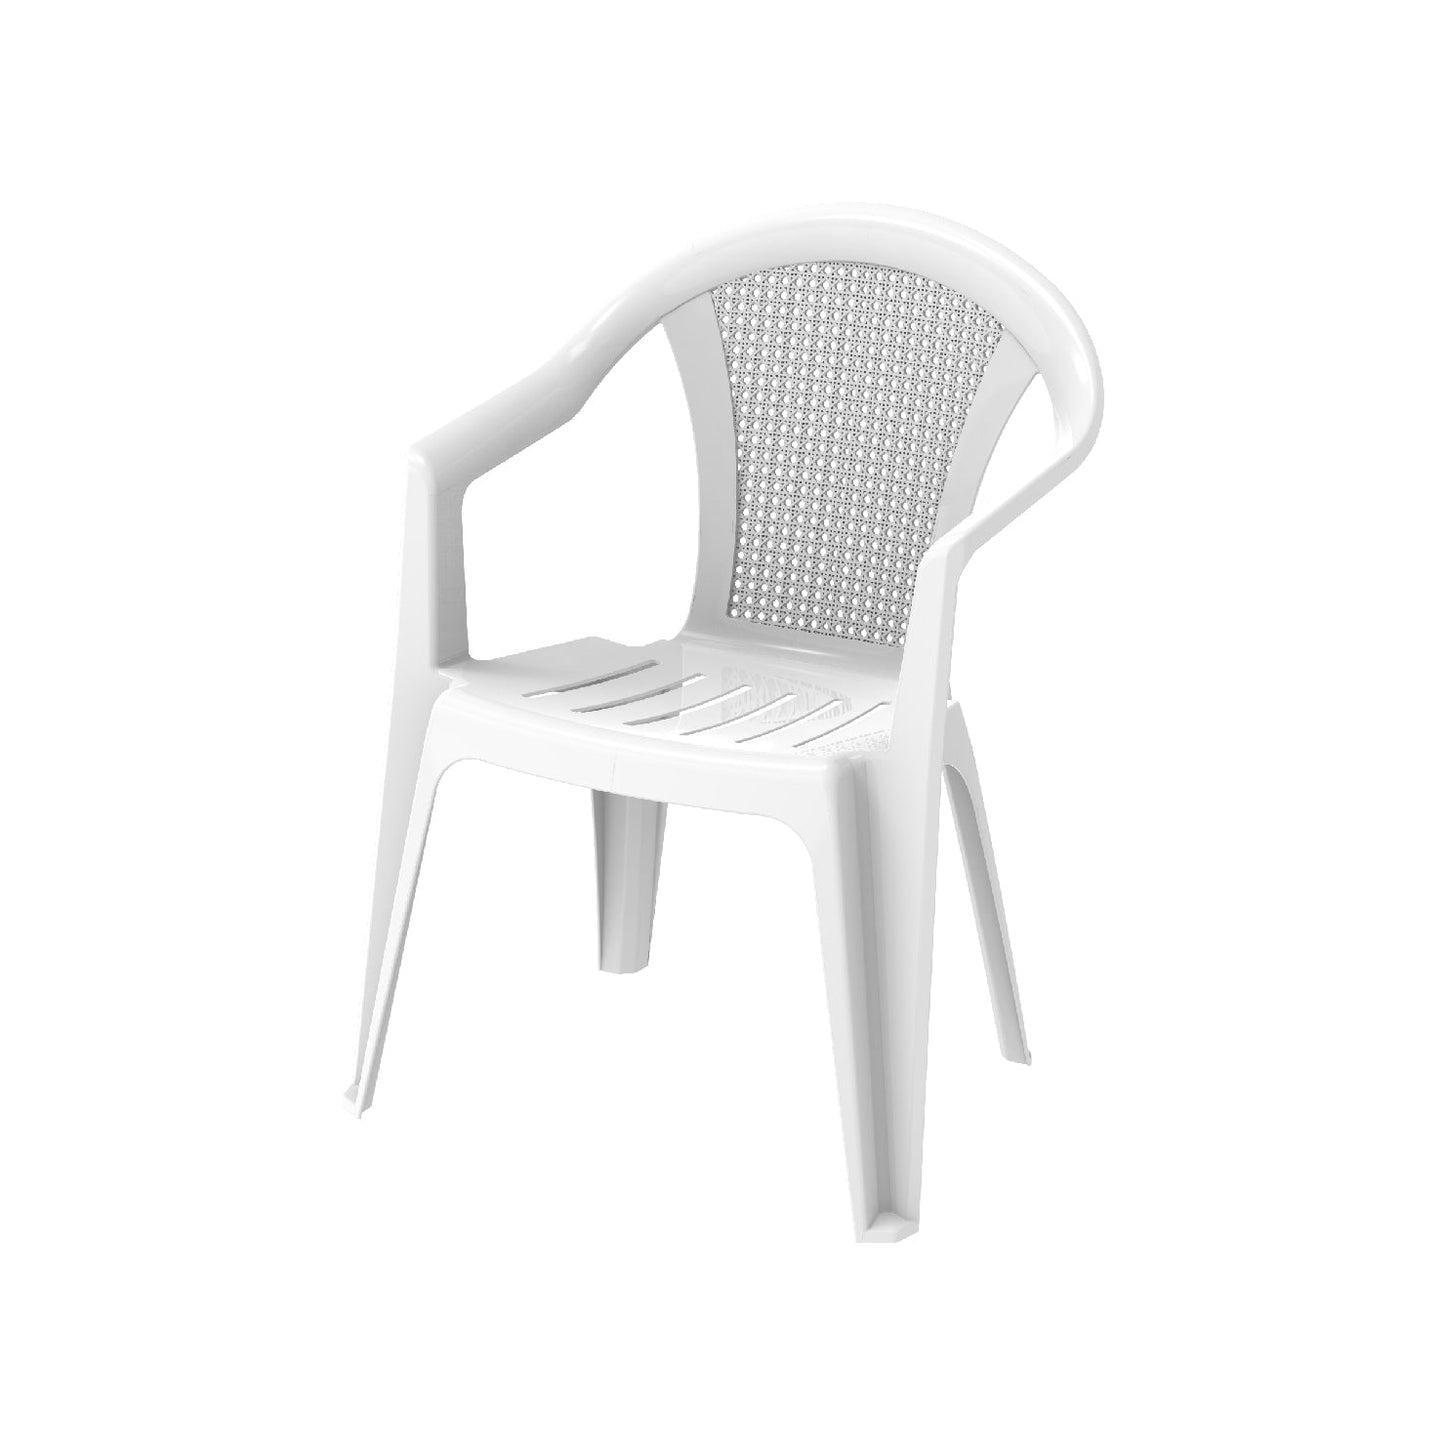 Bamboo Outdoor Garden Chair - Cosmoplast Kuwait